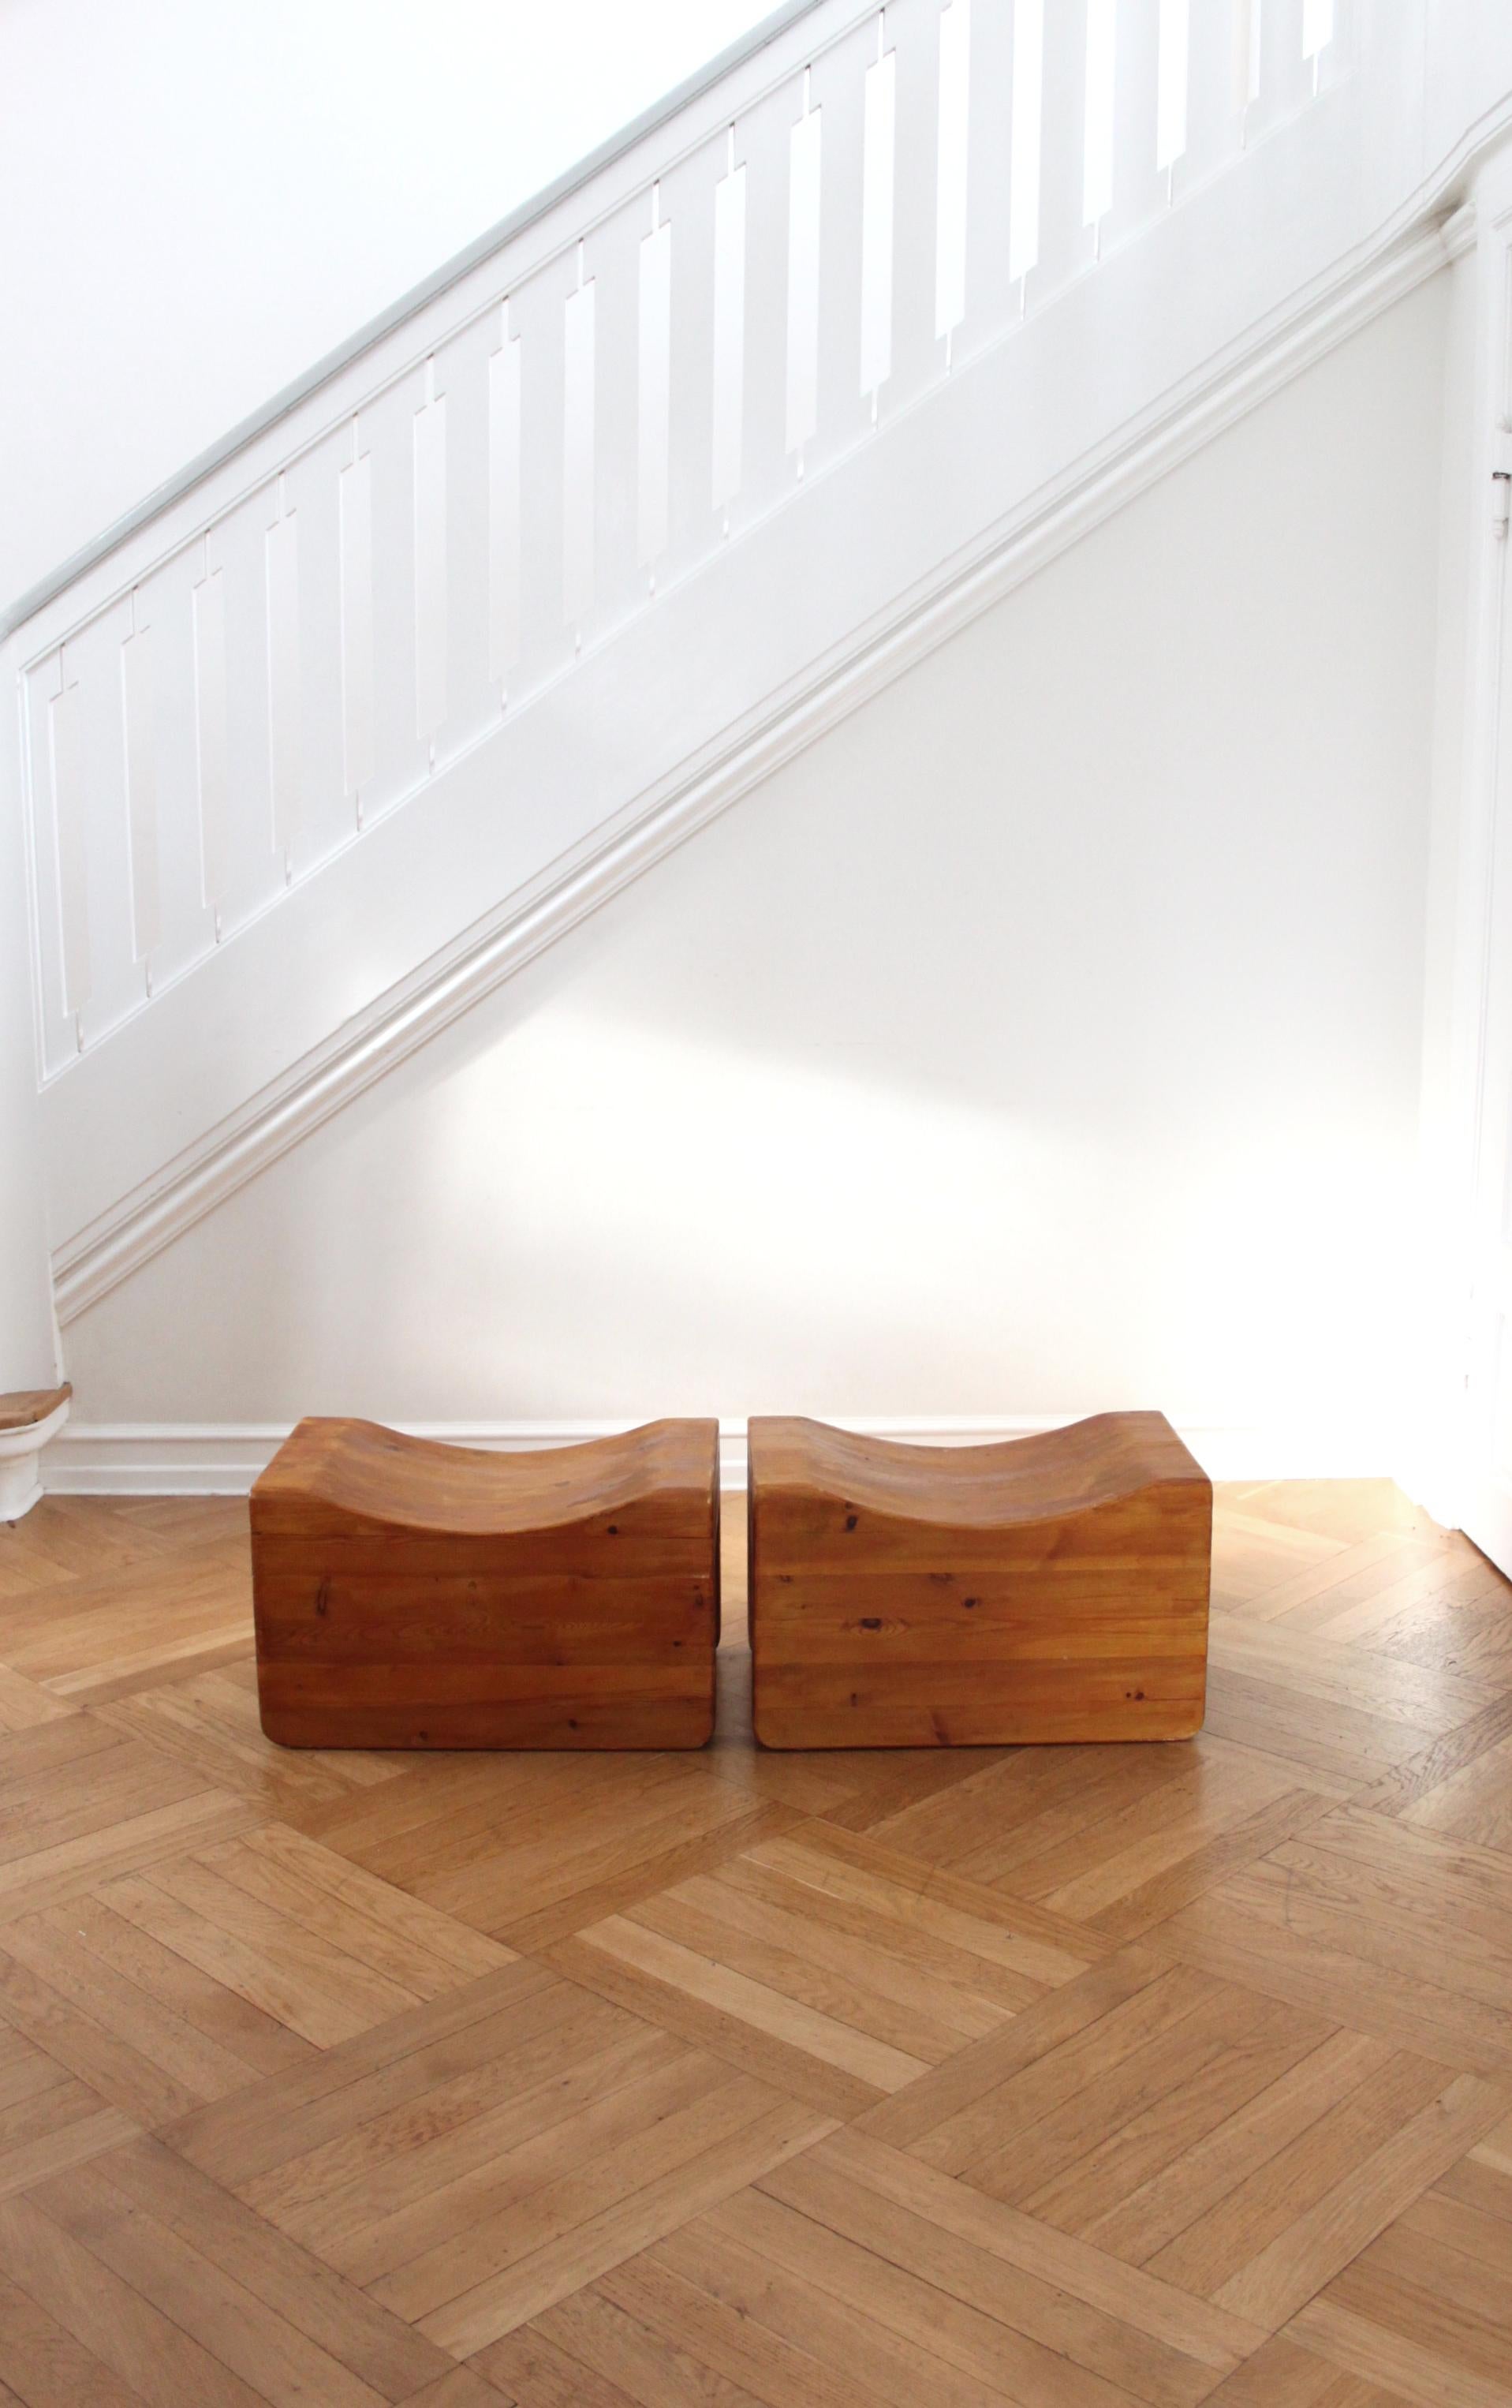 Scandinave moderne

Une rare et étonnante paire de tabourets Pall en pin, fabriqués par K.K. Pettersson & Söner. Les chaises ont une histoire quant à l'auteur de la conception et de la fabrication des tabourets. Pendant de nombreuses années, ils ont